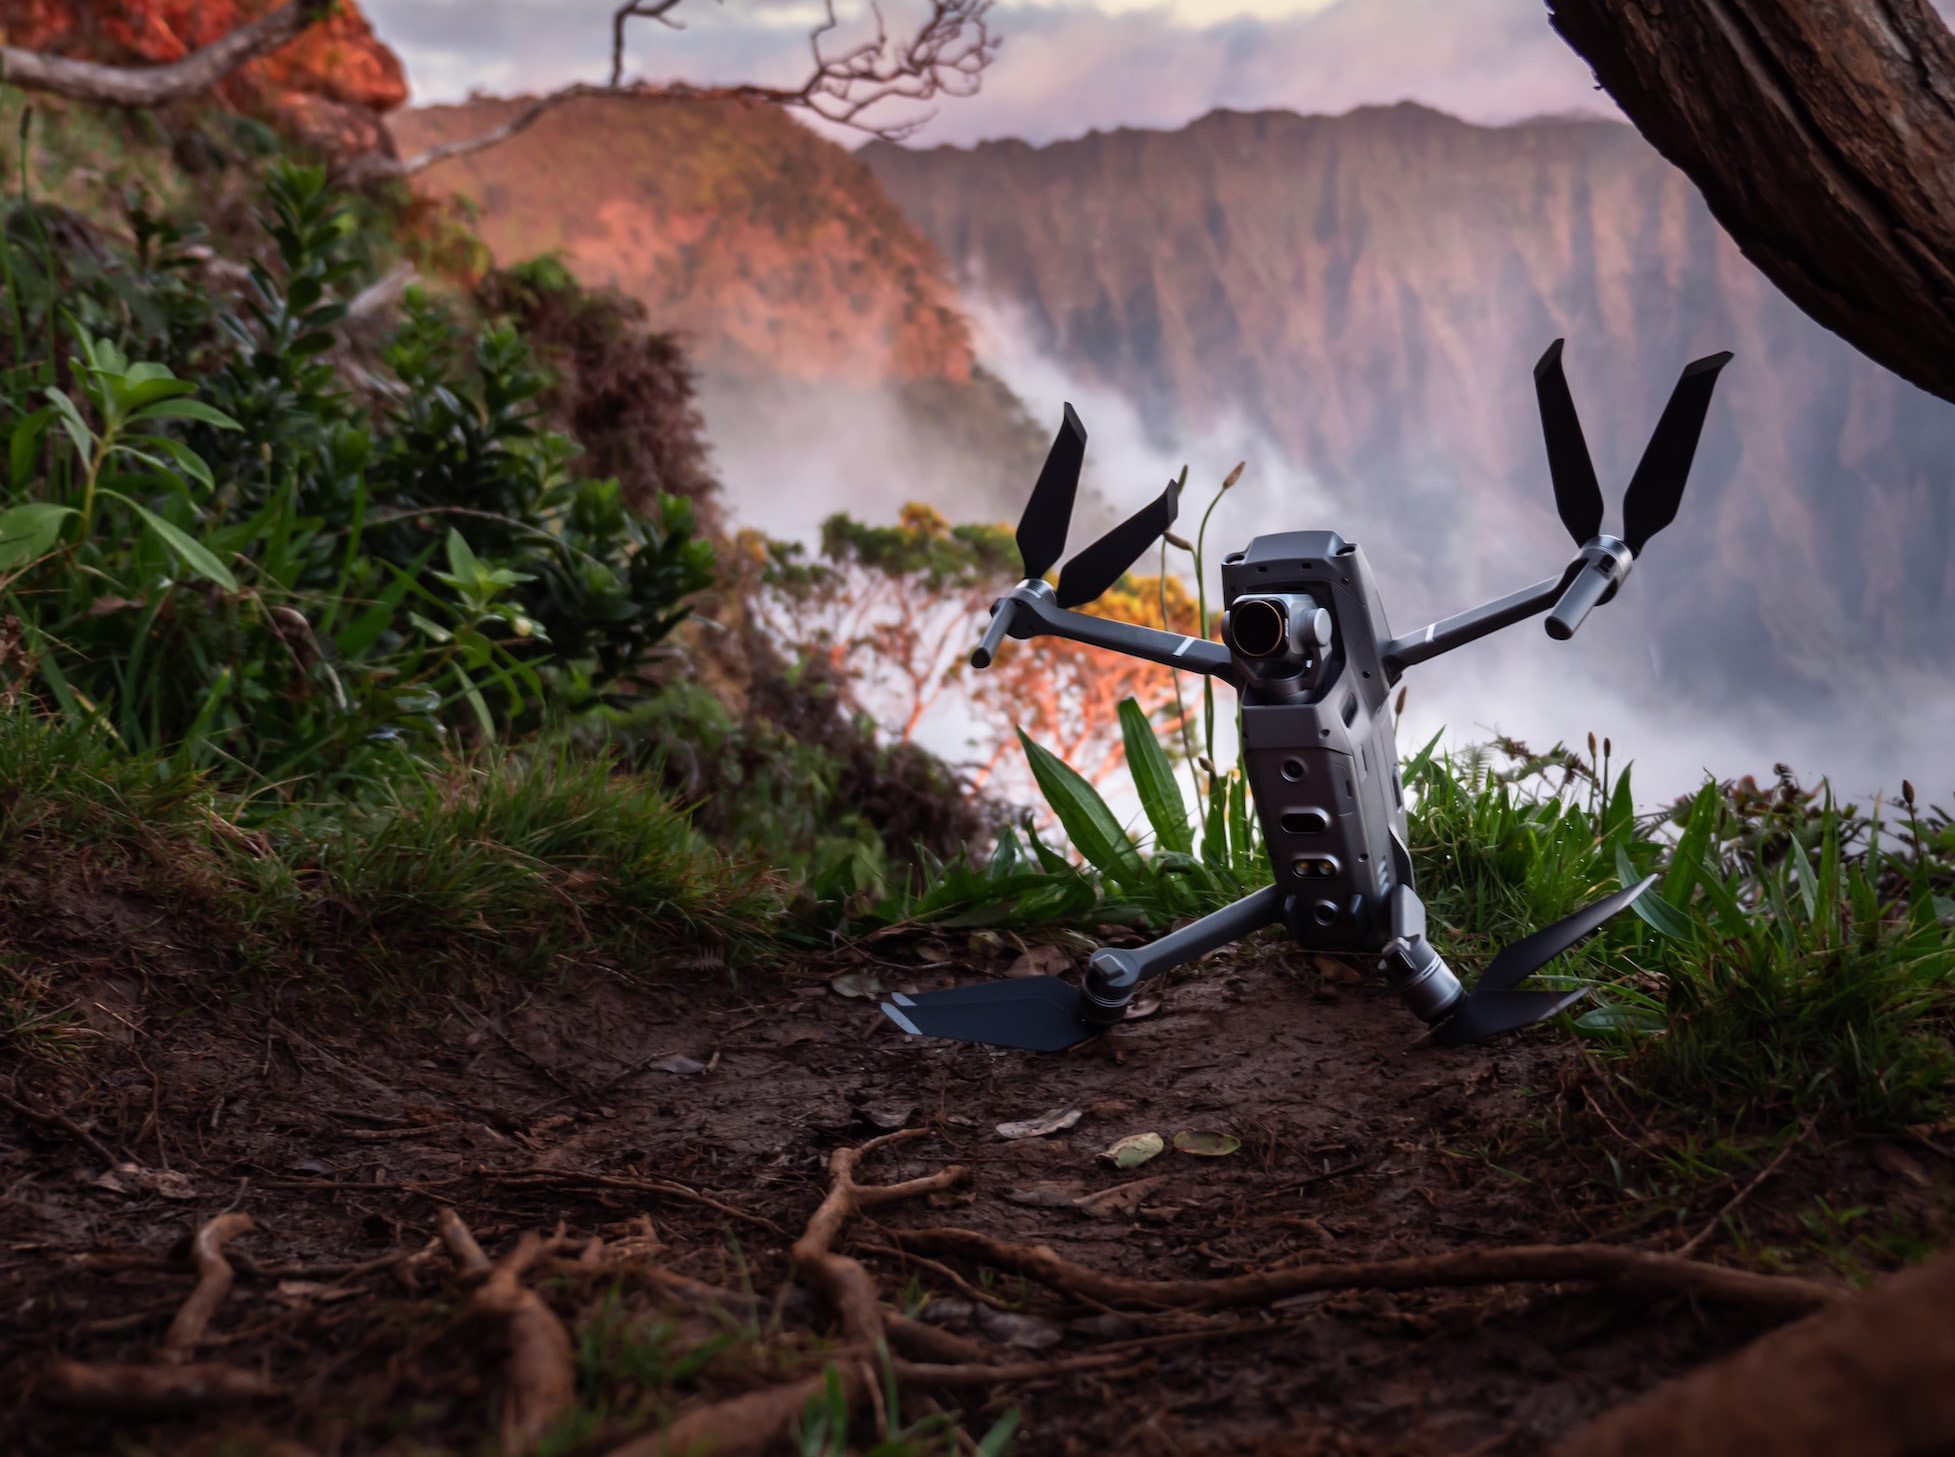 Fliegende Roboter Drone läuft auf Waldboden mit nebeliger Schlucht im Hintergrund